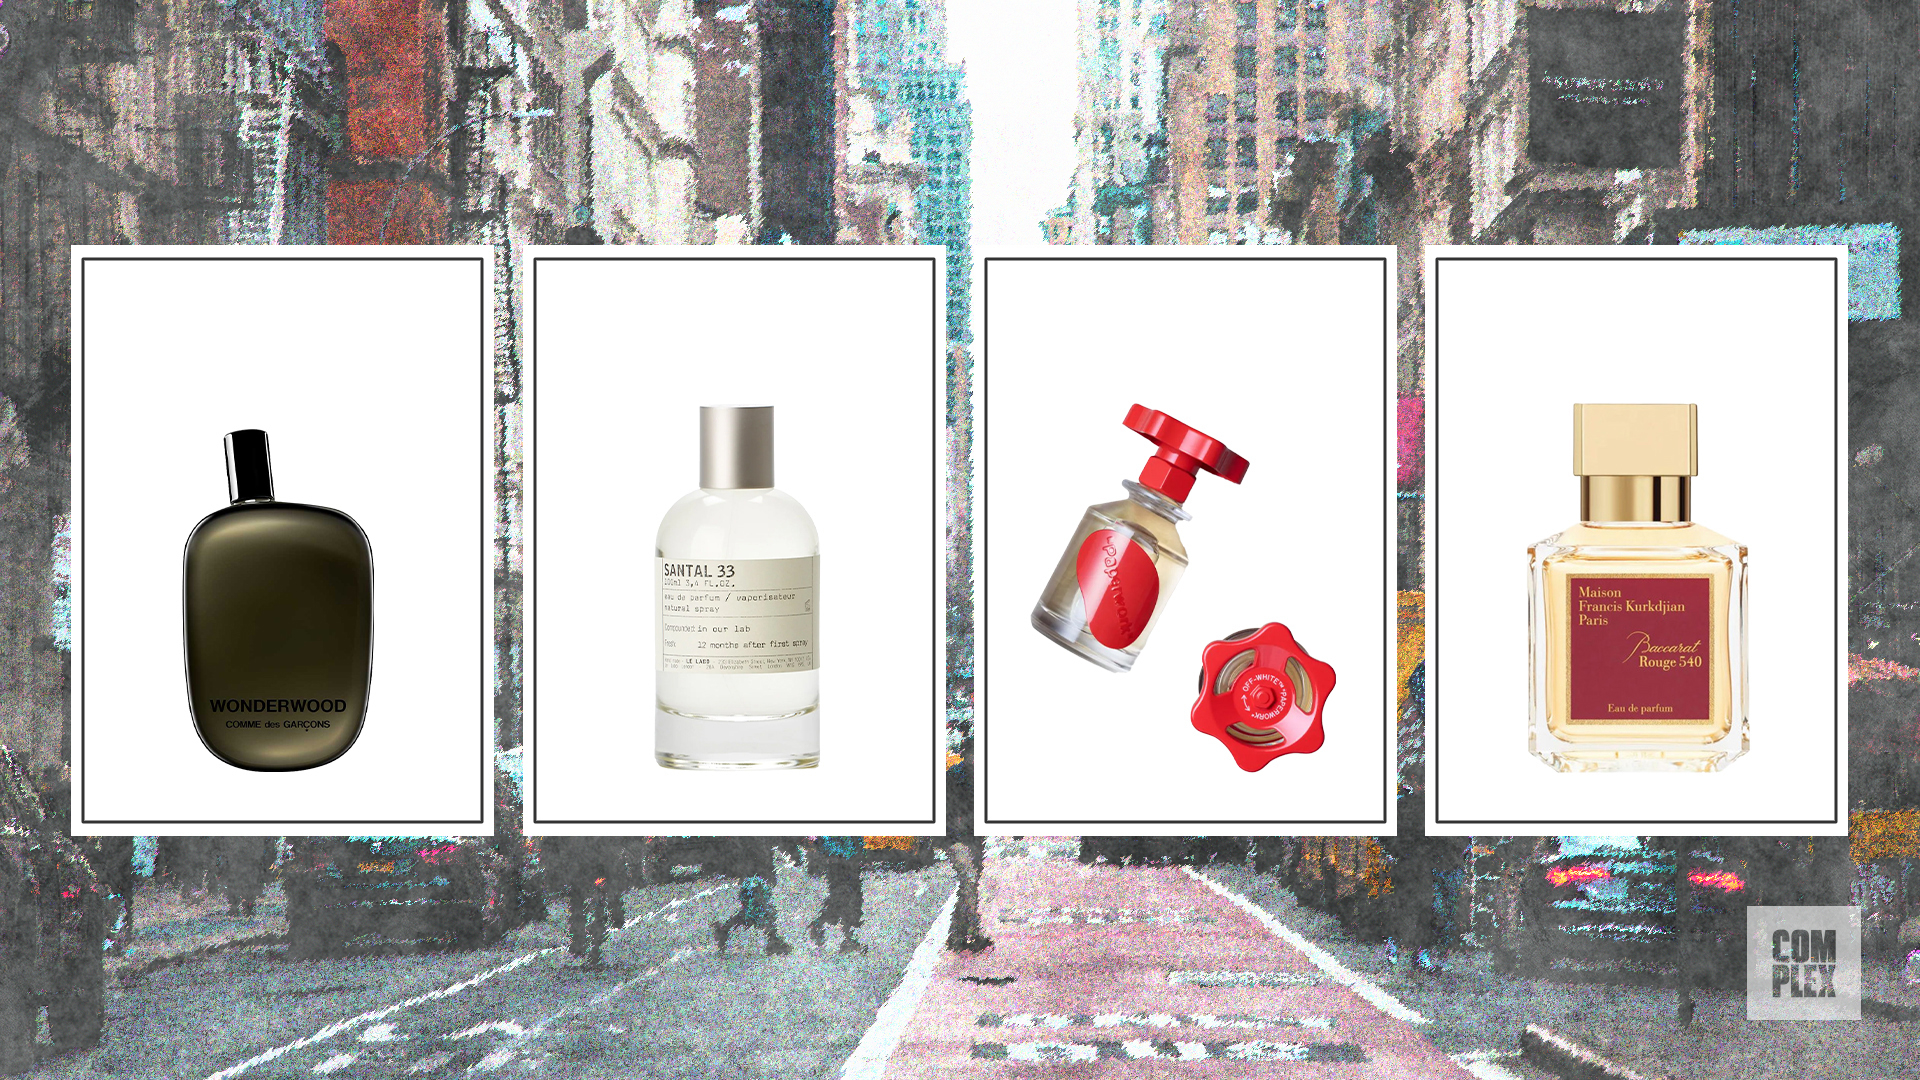 The 10 Best Maison Francis Kurkdjian Perfumes in 2023